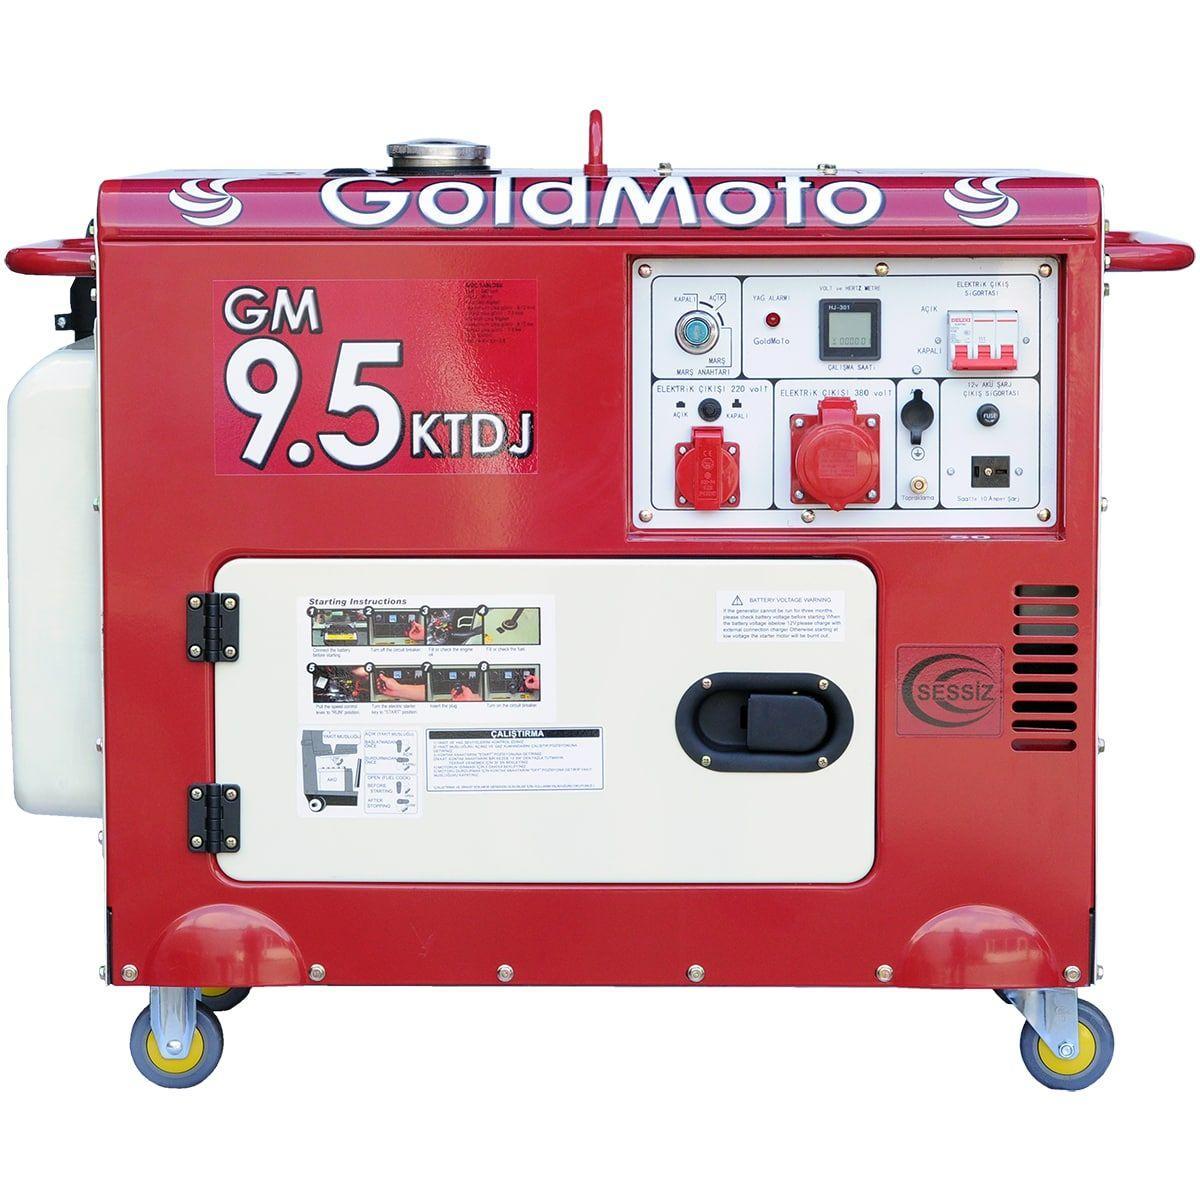 Генератор GoldMoto GM9.5KTDJ в интернет-магазине, главное фото